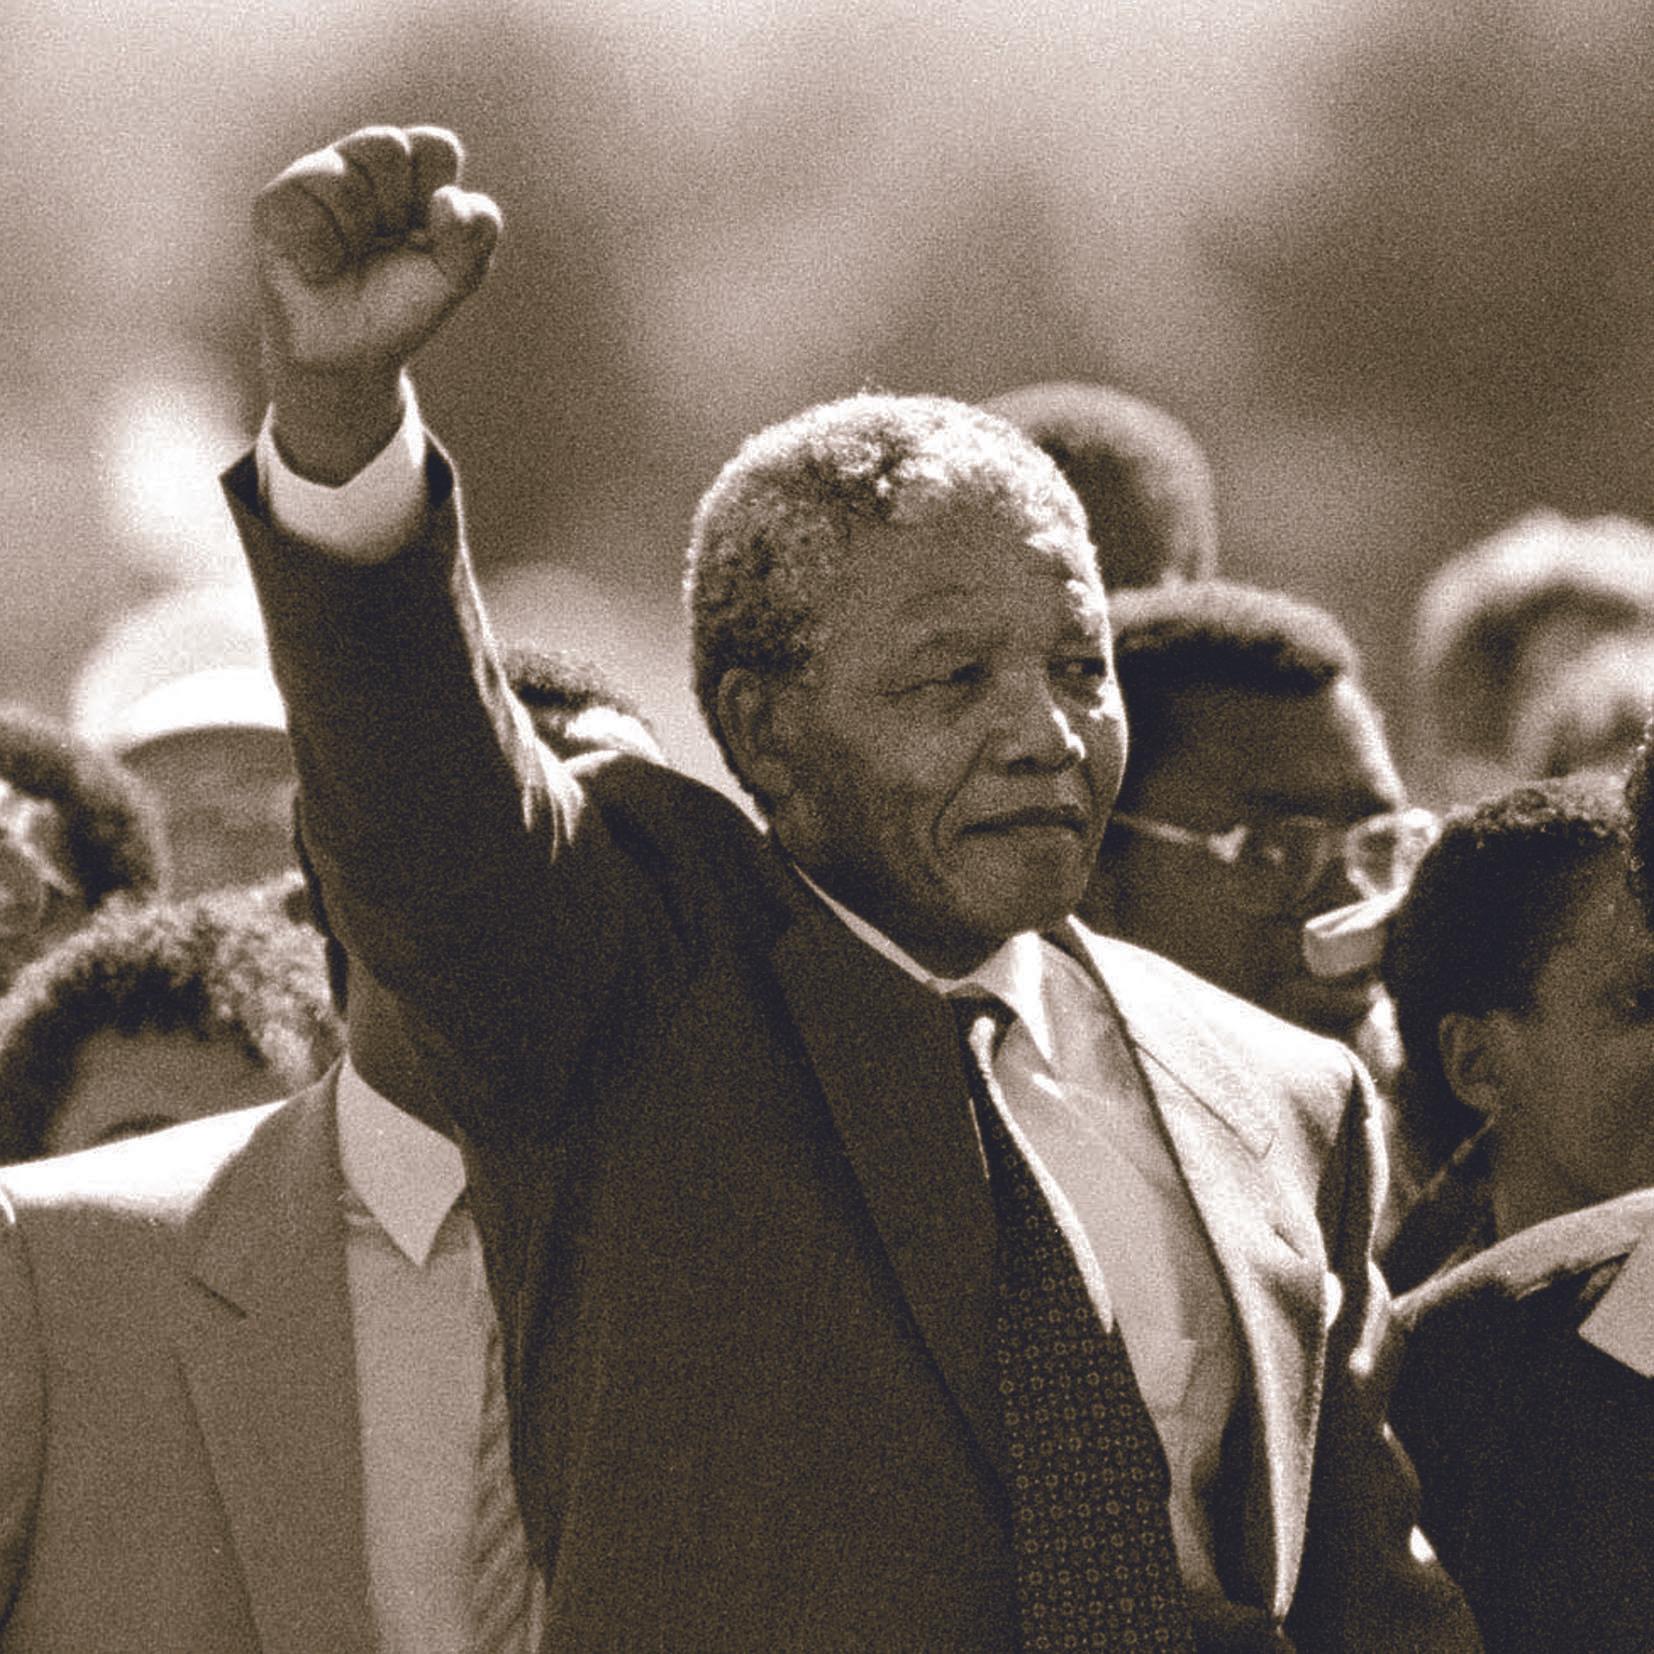 Thumbnail for "The Day Nelson Mandela Became Nelson Mandela".